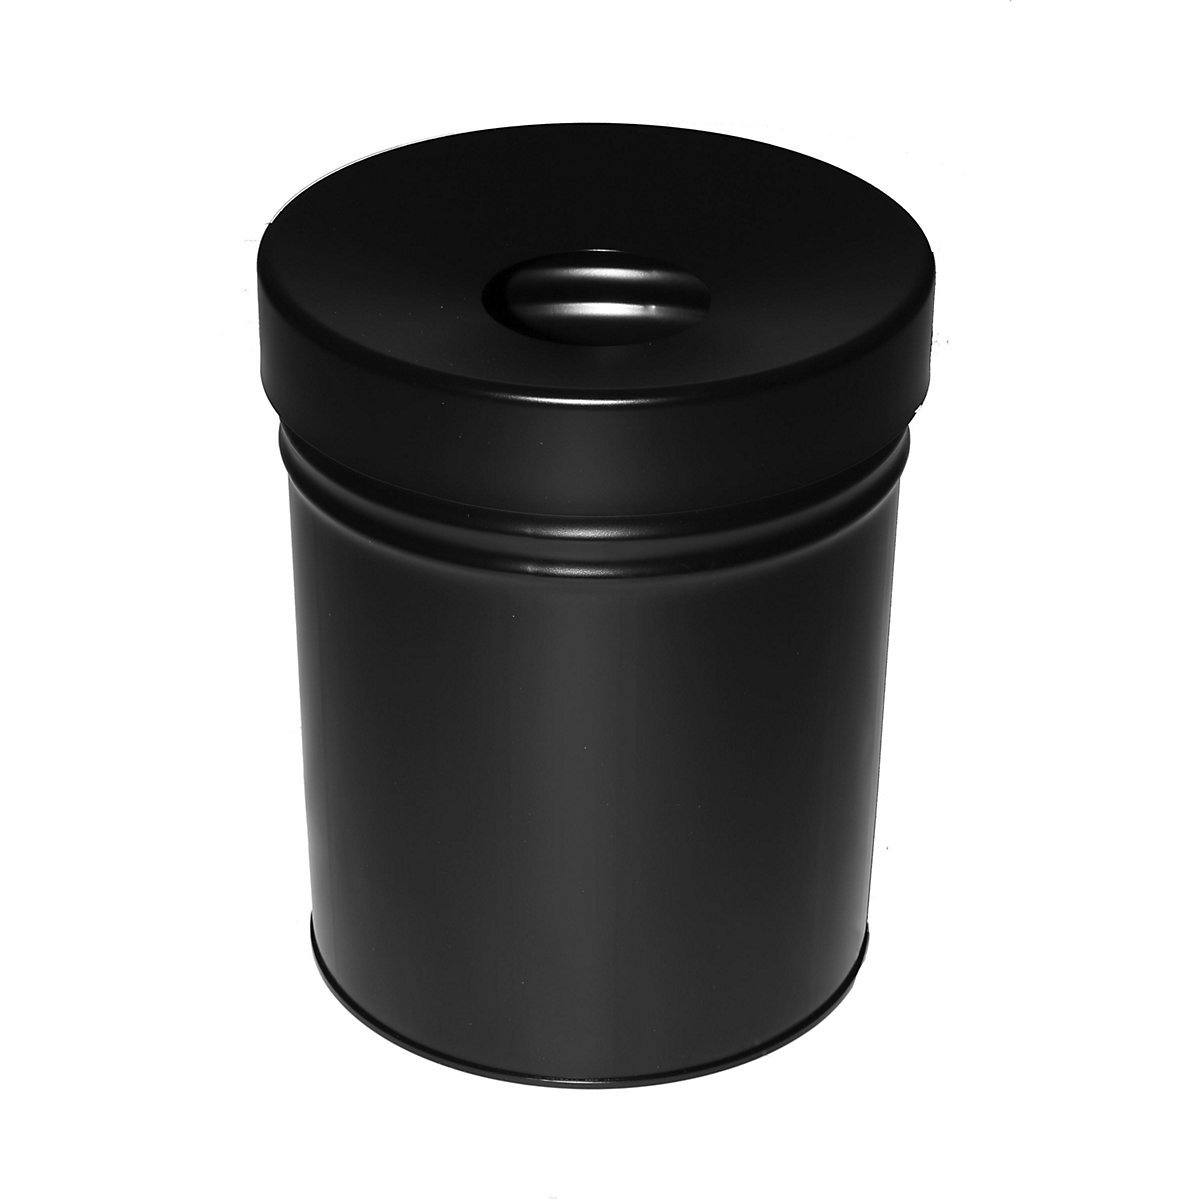 Abfallbehälter, selbstlöschend, Volumen 30 l, HxØ 415 x 344 mm, schwarz-3